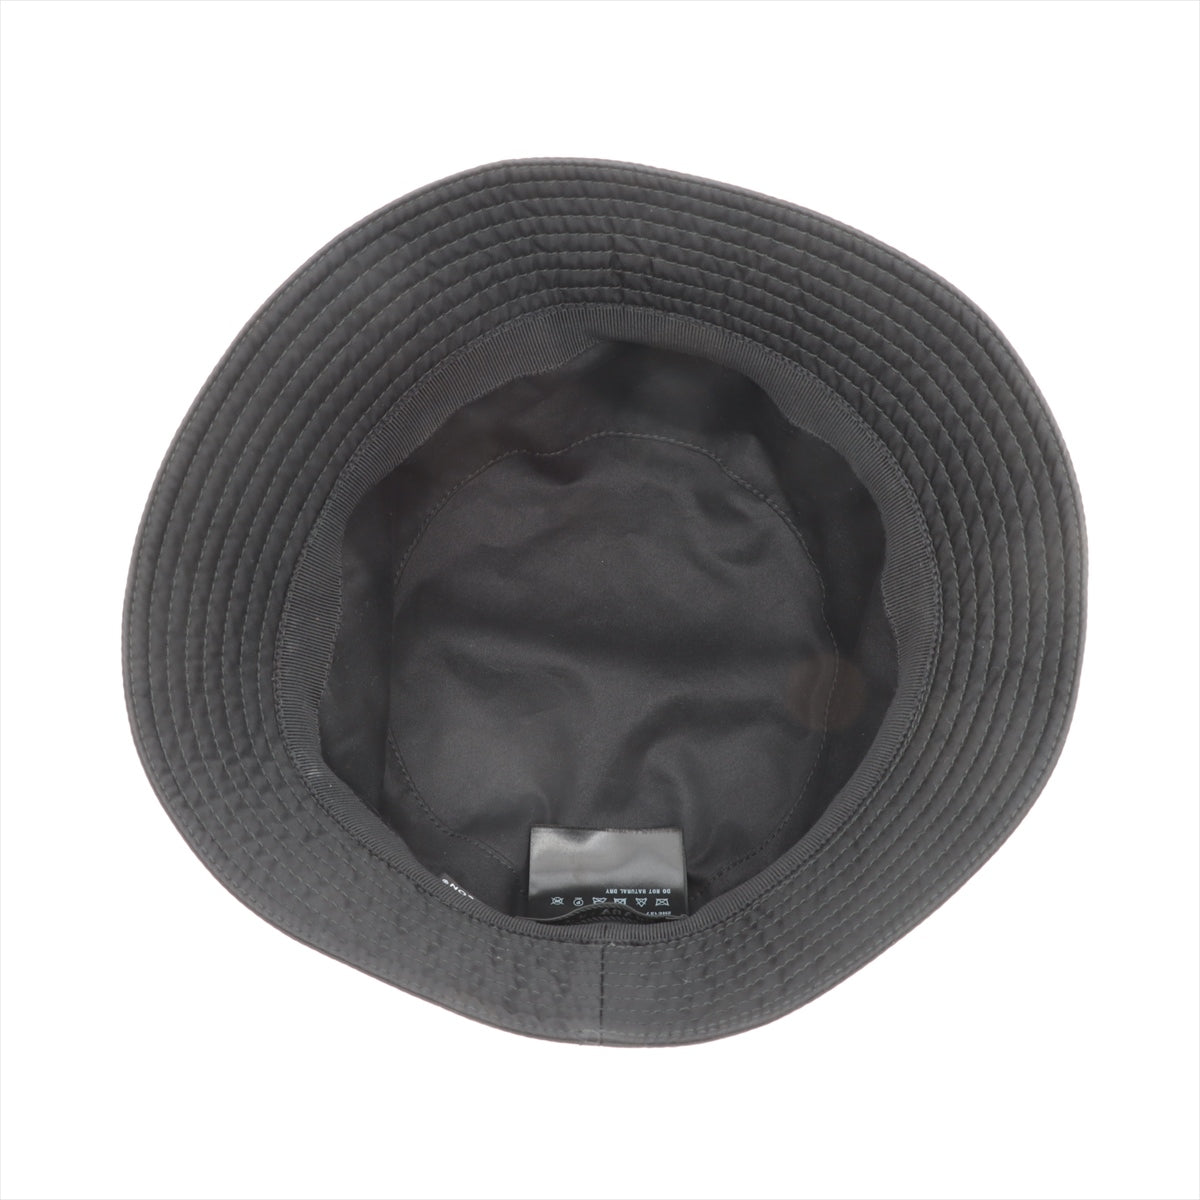 Prada 2HC137 Re Nylon Re Nylon Hat XL Polyamide Black